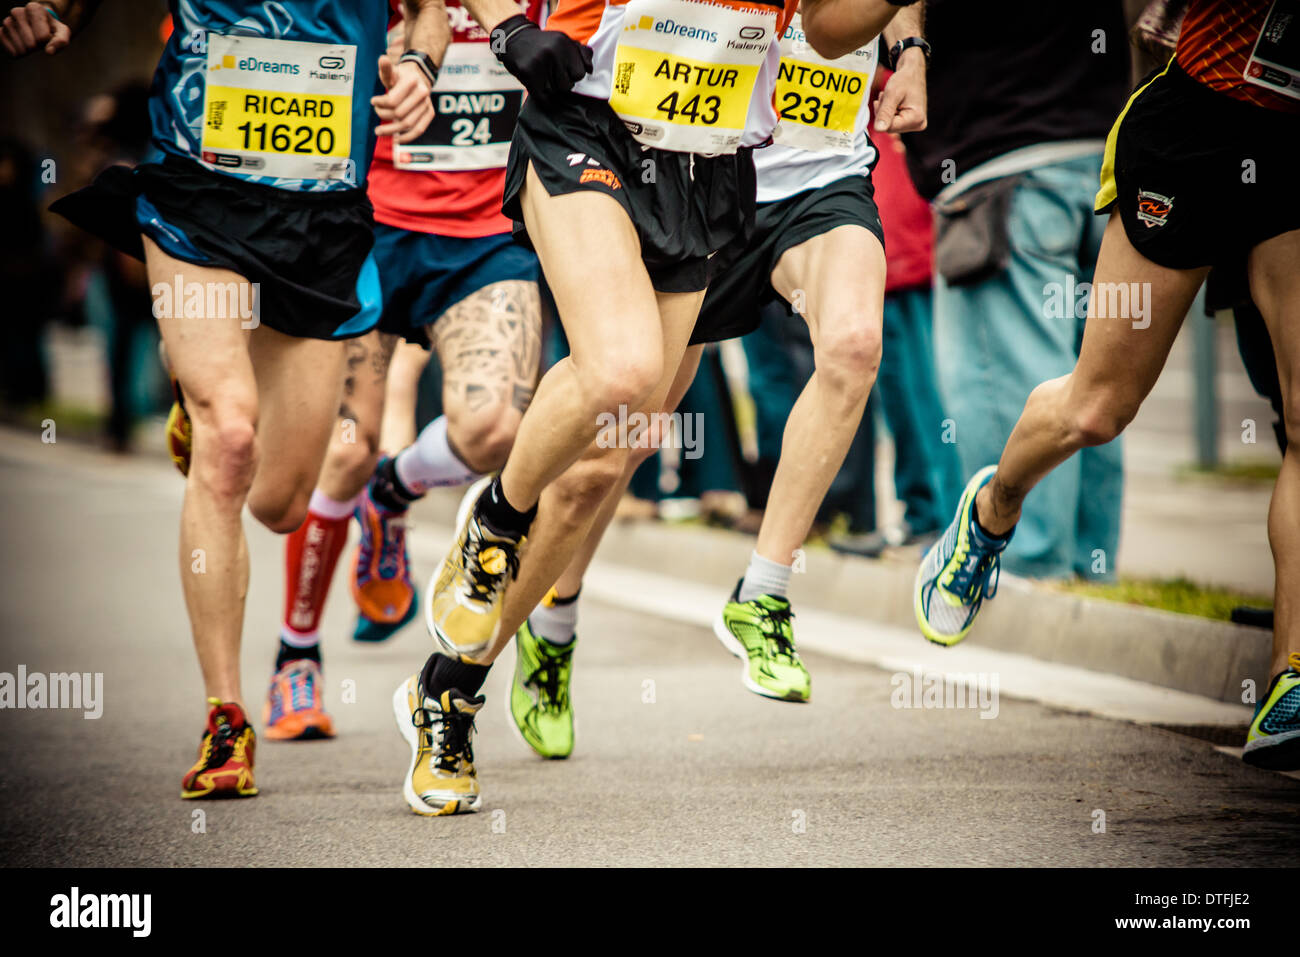 Barcelone, Espagne. 16 février 2014. Environ 14,000 : Ossature en compétition lors de la 24e édition du semi-marathon de Barcelone © matthi/Alamy Live News Crédit : matthi/Alamy Live News Banque D'Images